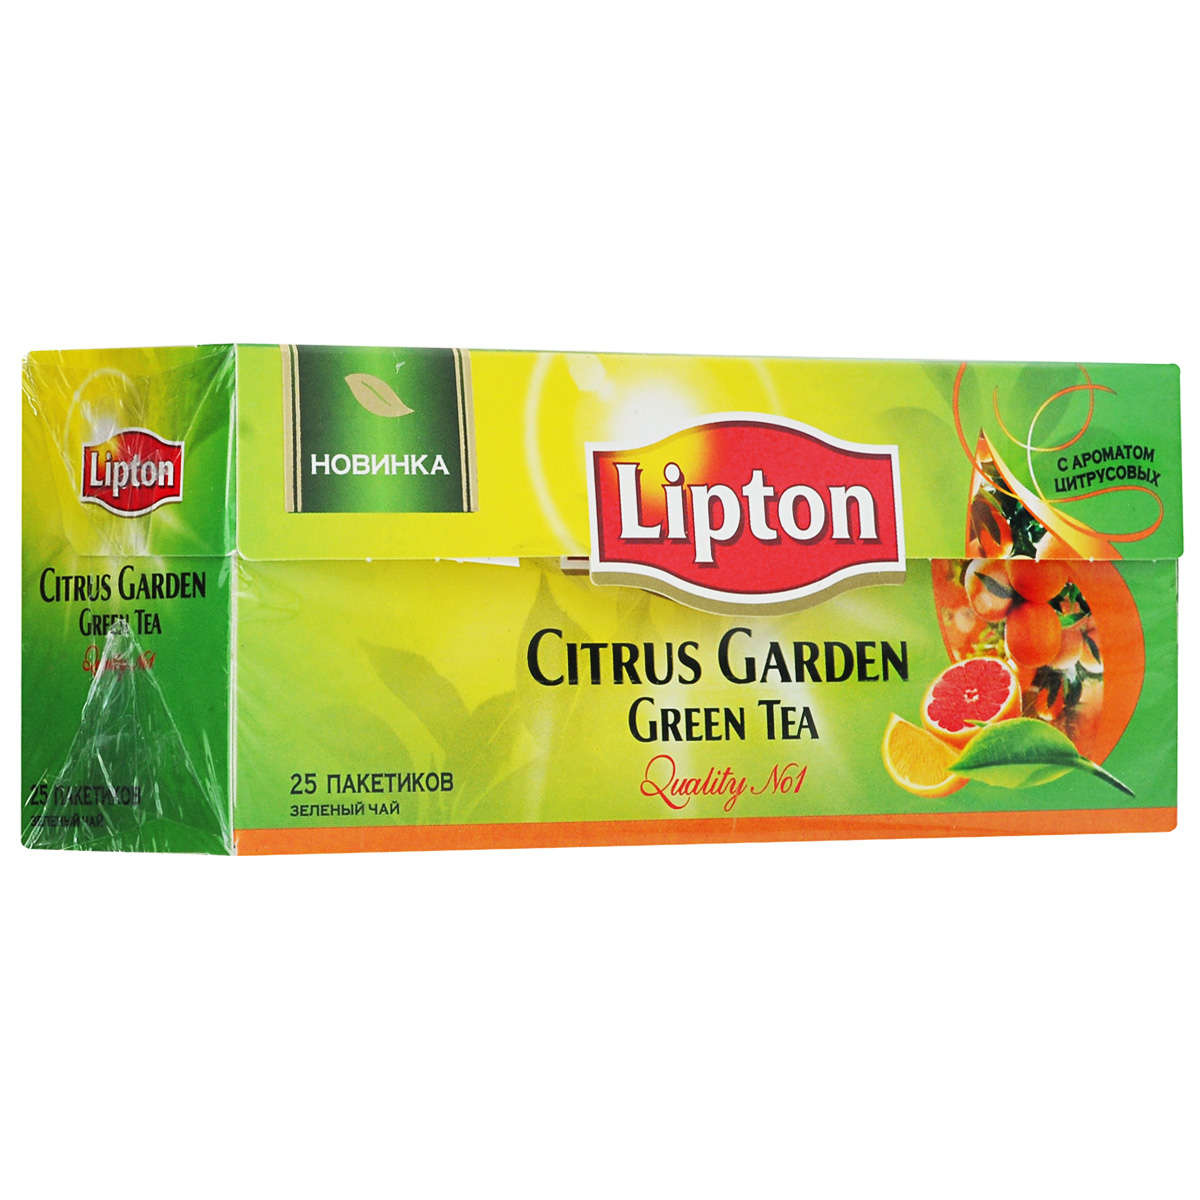 Молодые чайные листочки, выращенные под теплыми лучами солнца, дарят зеленому чаю Lipton Citrus Garden нежный вкус, дополненный ярким свежим ароматом грейпфрута, апельсина и мандарина, чтобы Вы могли насладиться любимым чаем в каждой чашке. Откройте яркий вкус цитрусовых ноток в изысканном букете зеленого чая Lipton!